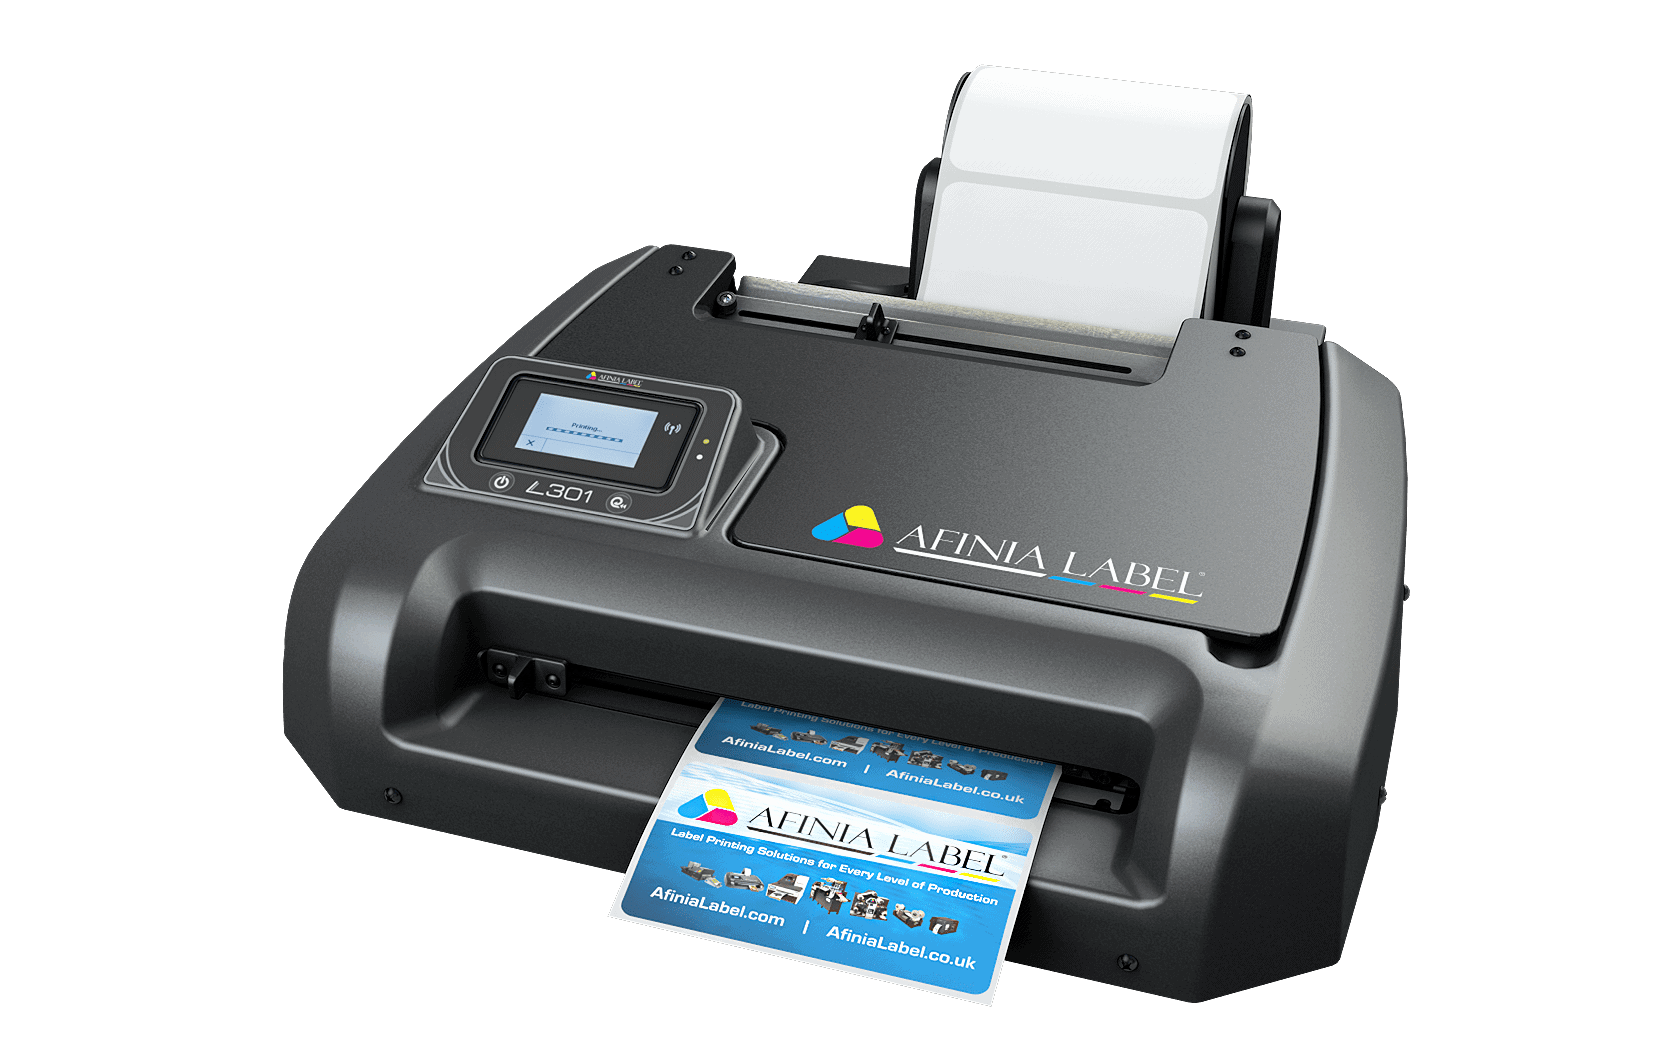 Imprimante de code barres de couleur de Mini imprimante à jet d